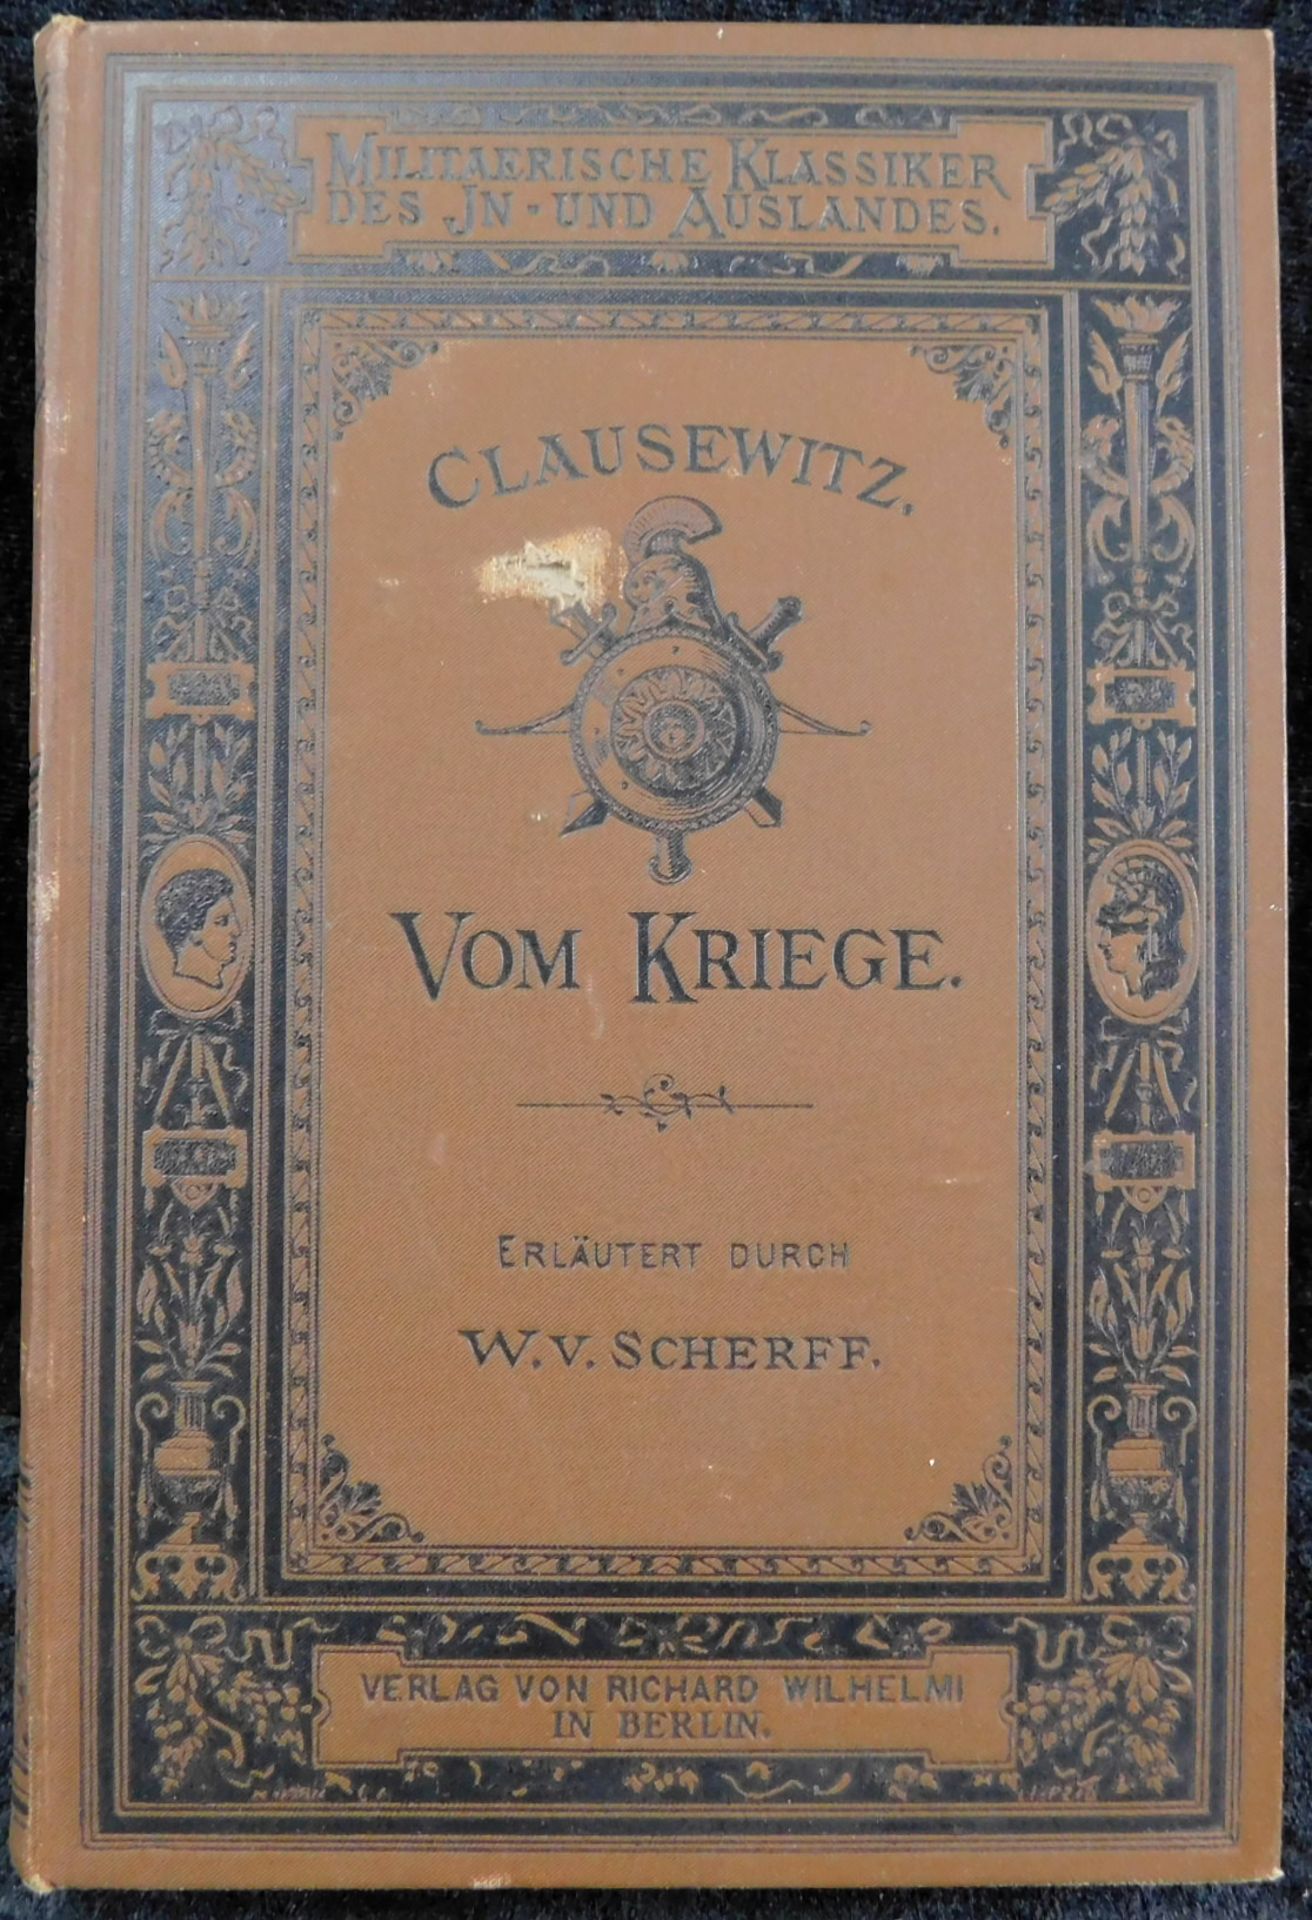 Vom Kriege, Werke von Clausewitz, W. von Scherff, Goldschmidt & Wilhelmi, Berlin 1880V